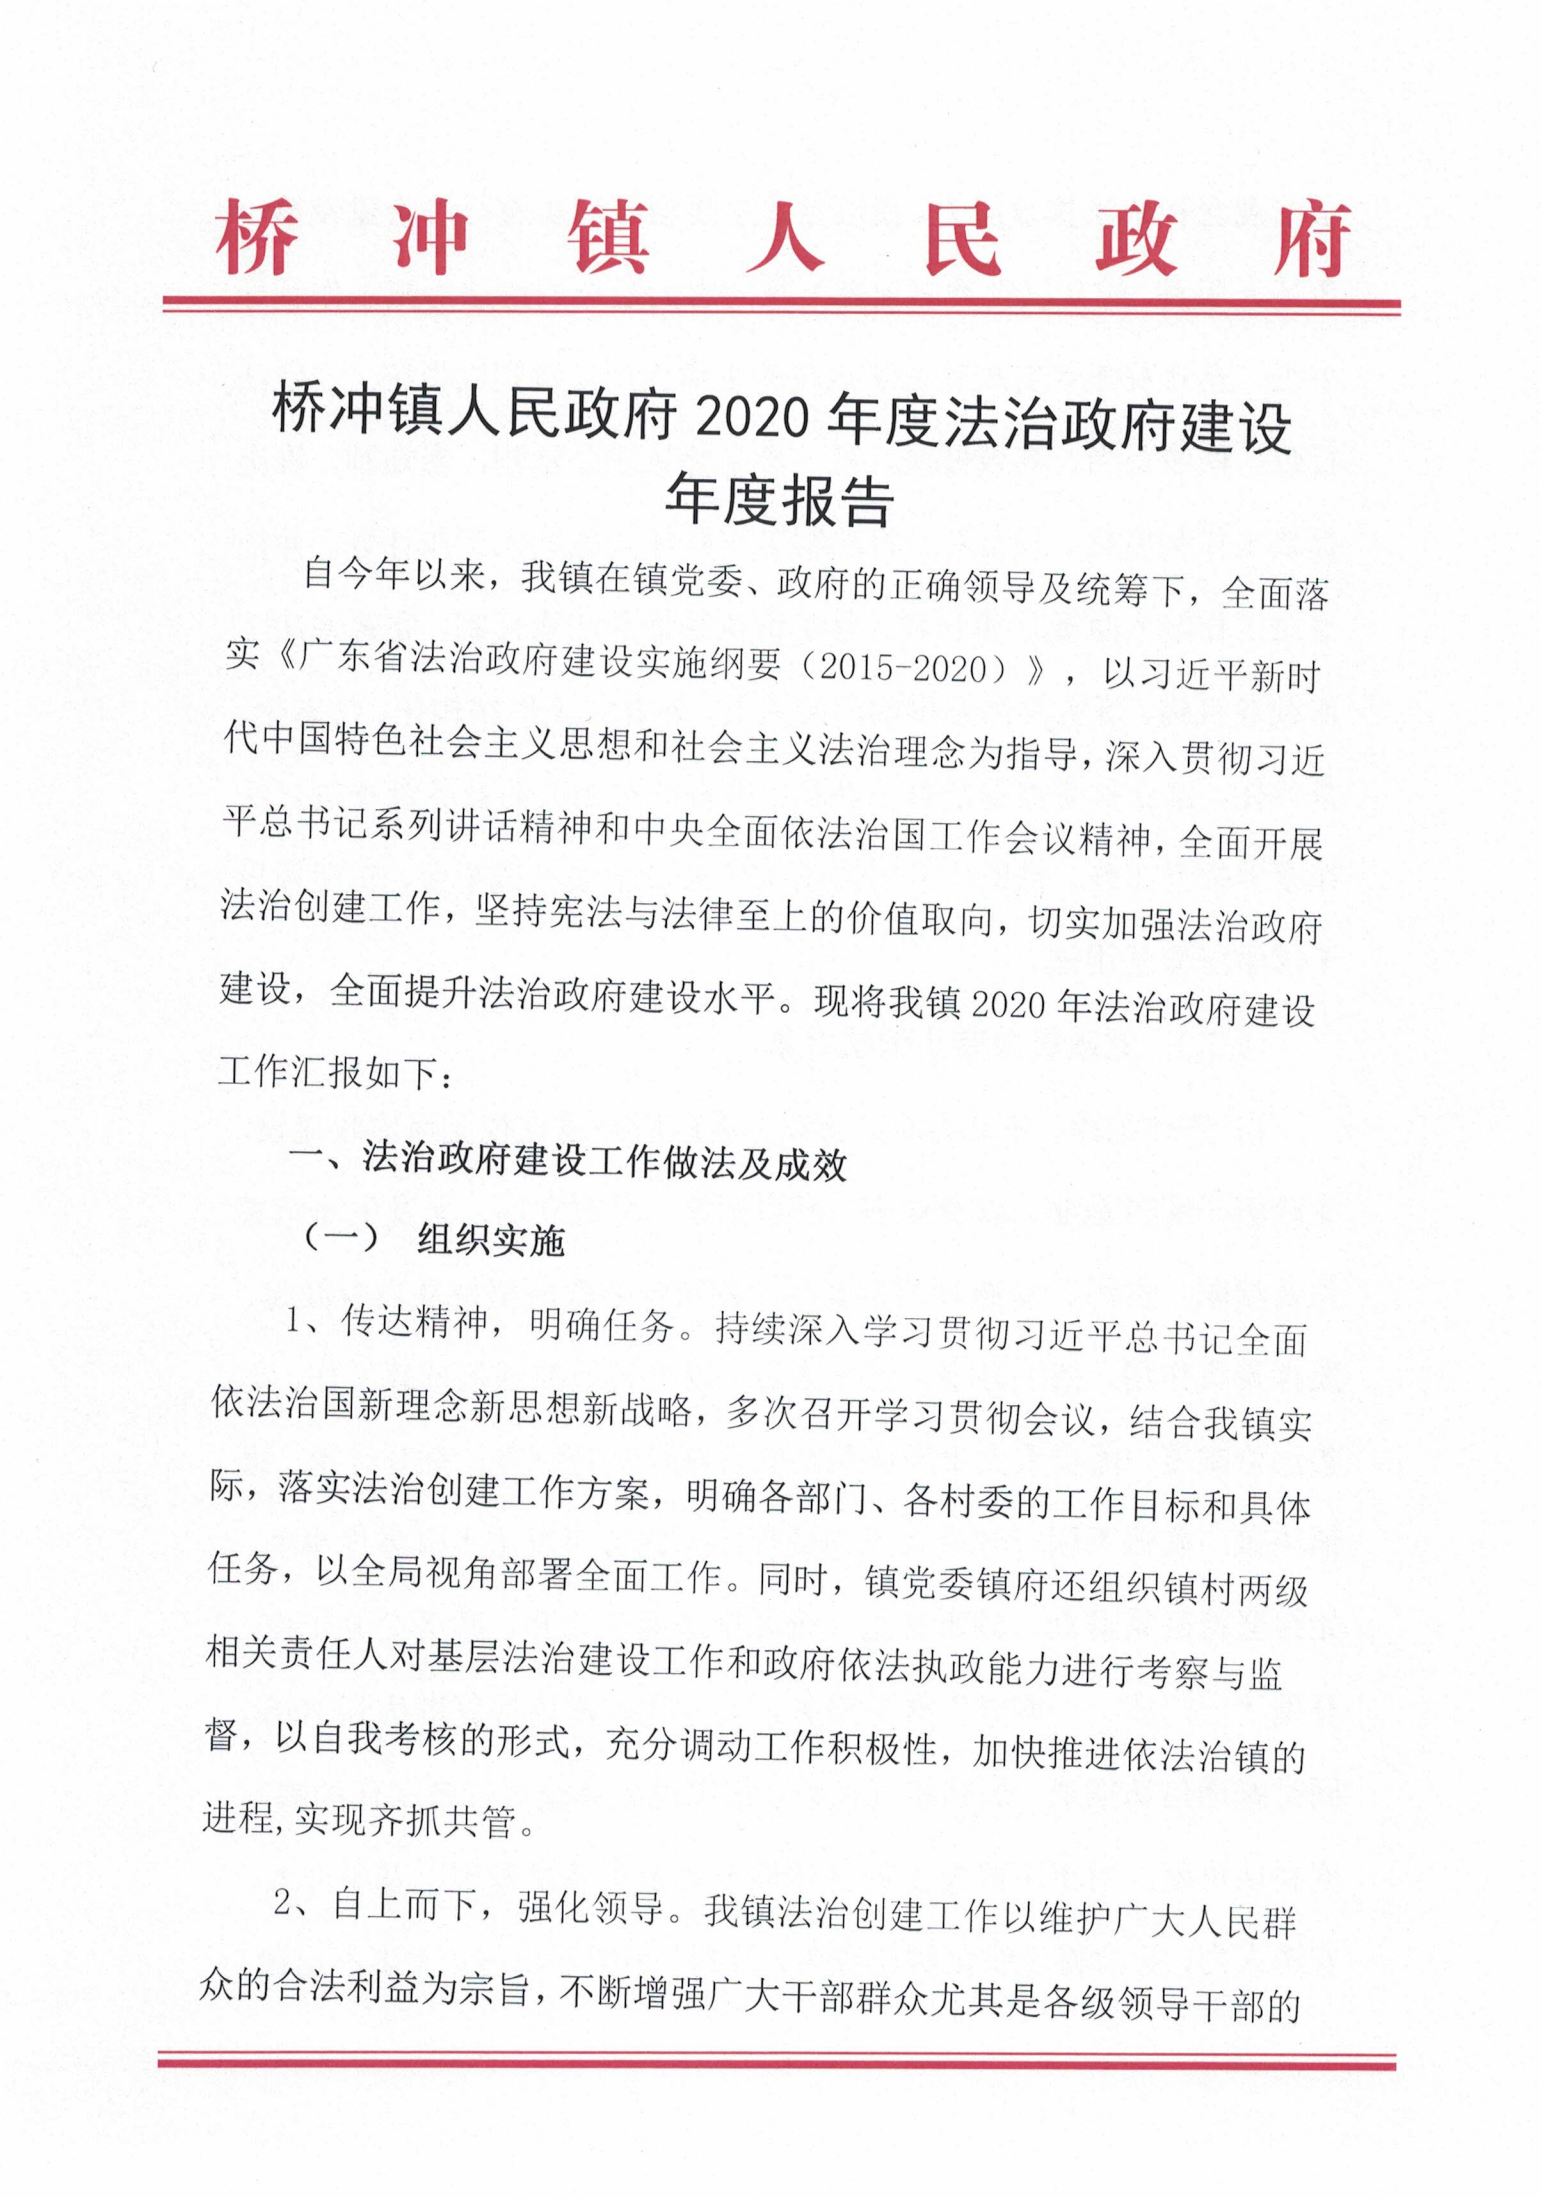 桥冲镇人民政府2020年度法治政府建设年度报告_00.png